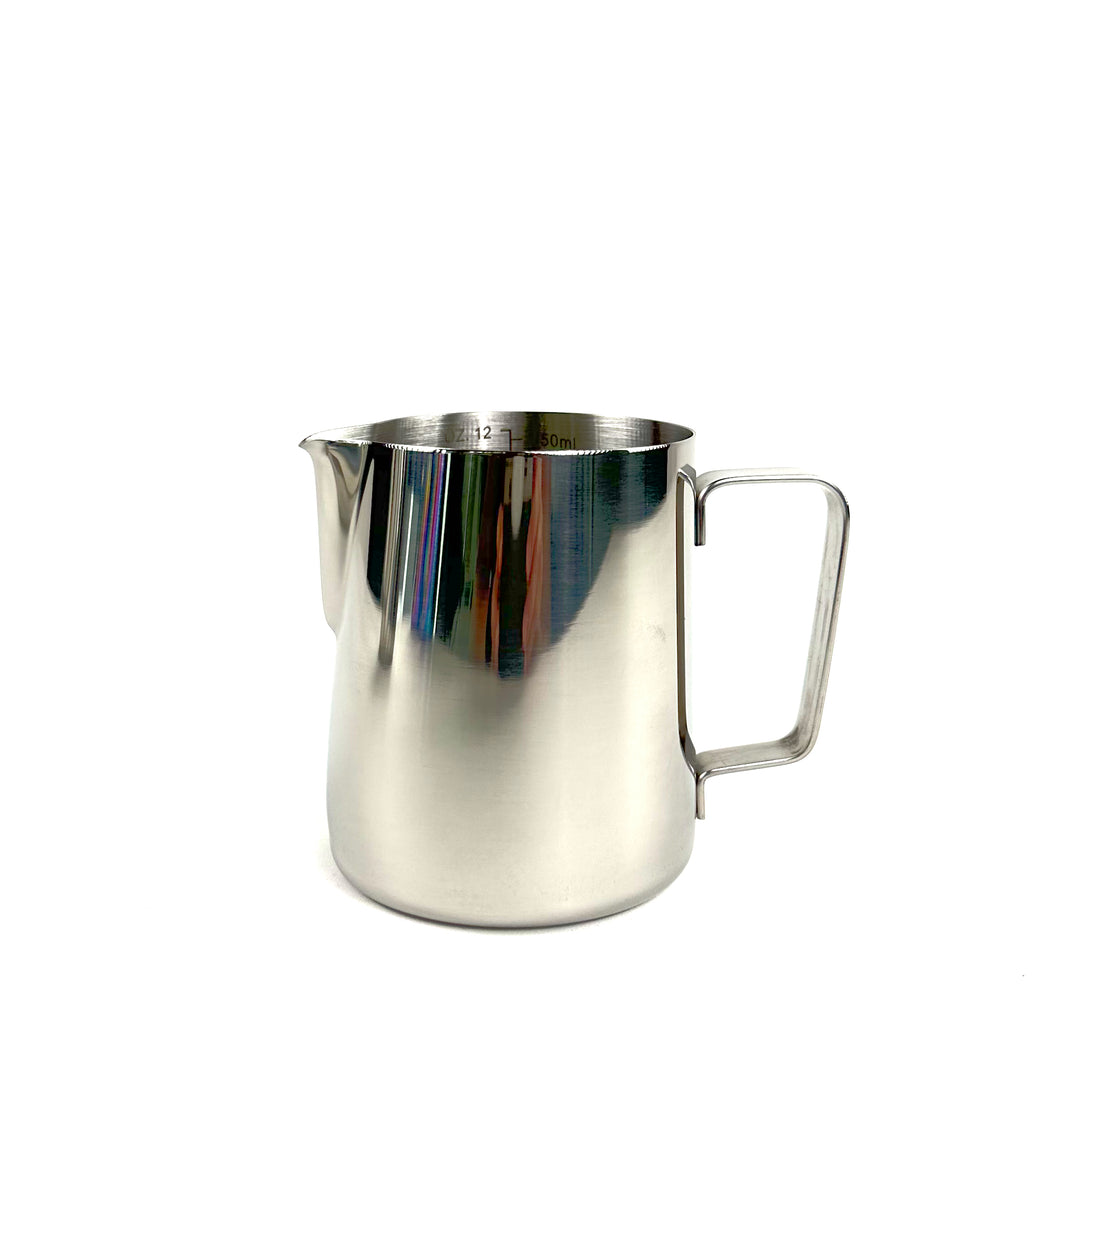 Stainless Steel Coffee Milk Jug - 350ml